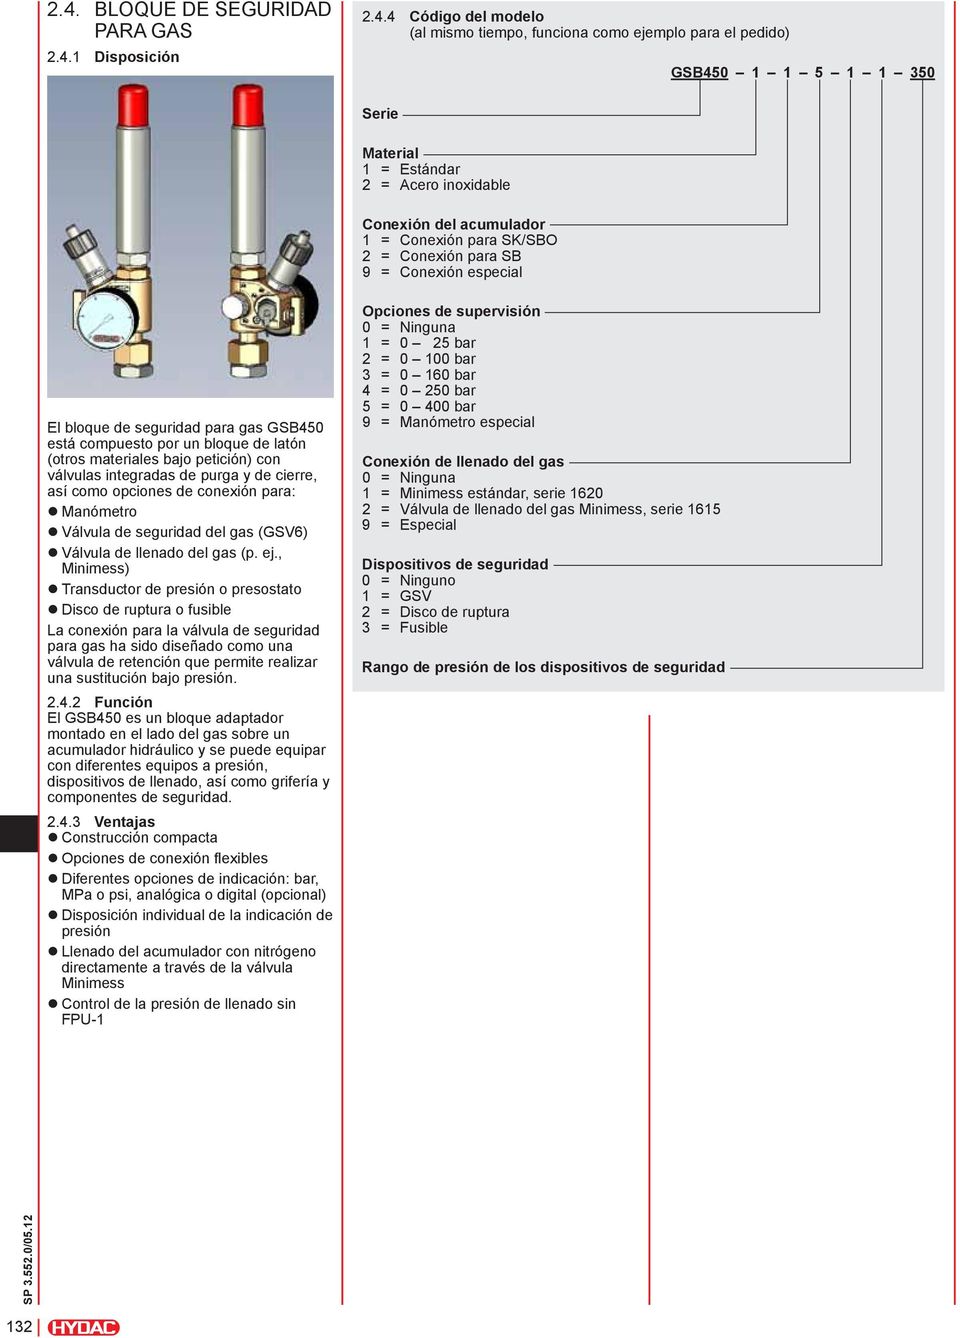 bajo petición) con válvulas integradas de purga y de cierre, así como opciones de conexión para: zmanómetro zválvula de seguridad del gas (GSV6) zválvula de llenado del gas (p. ej.